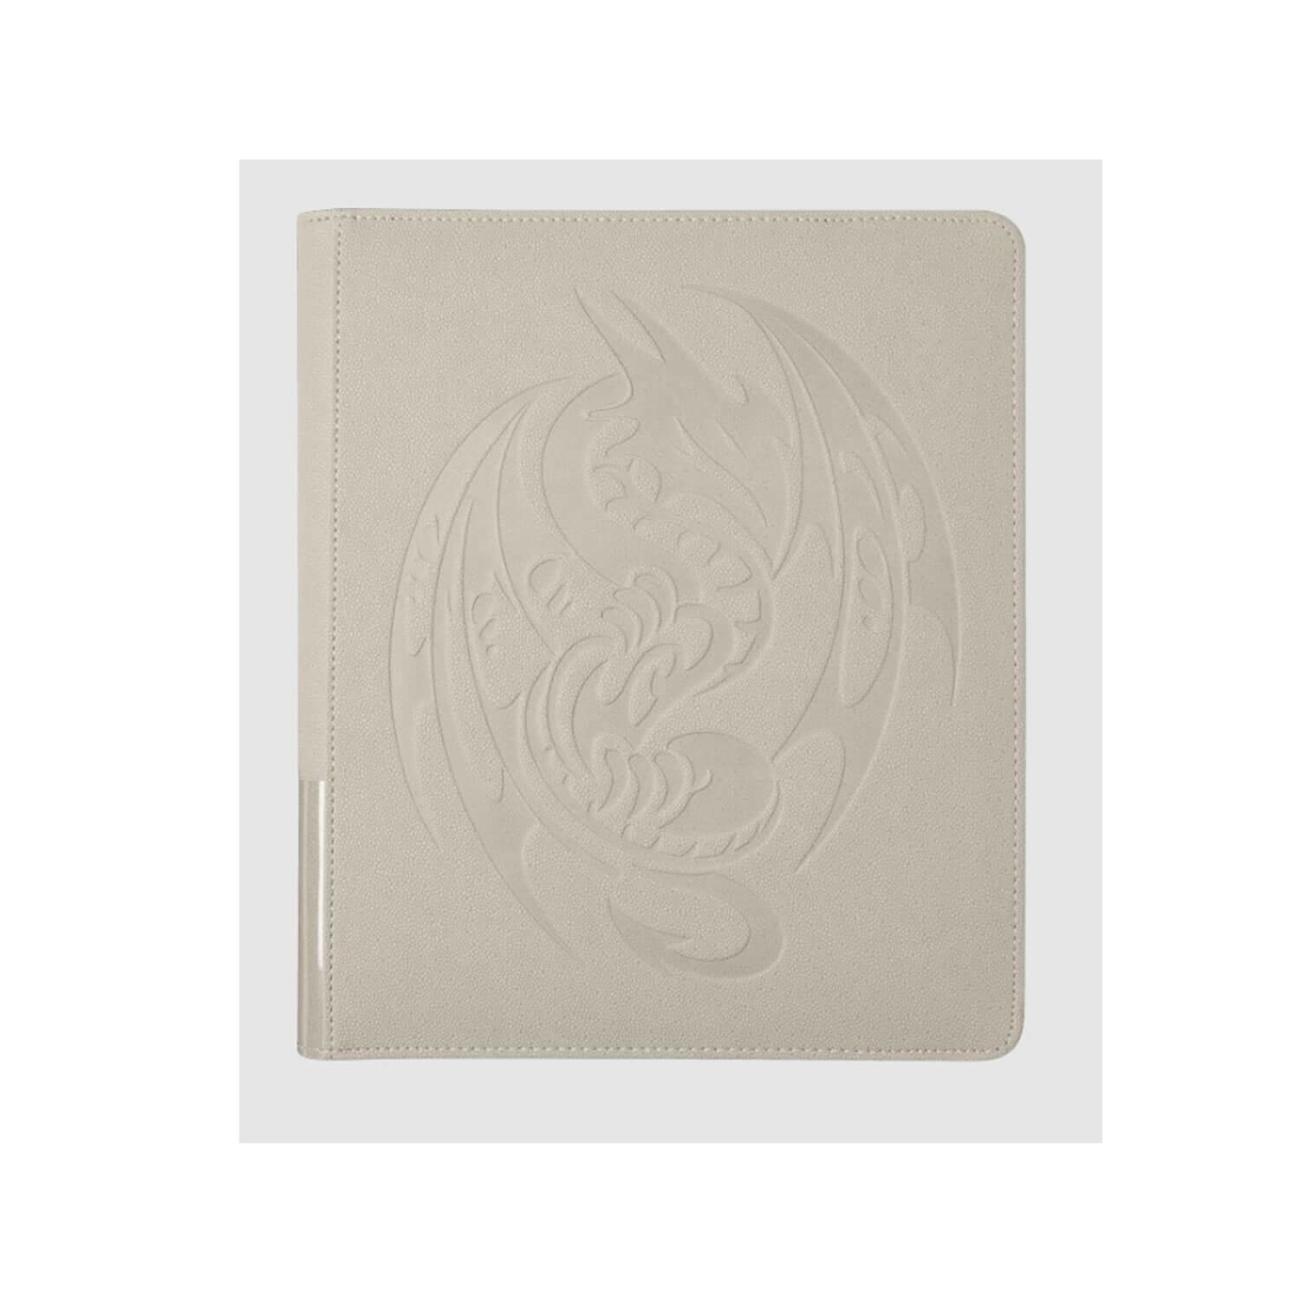 DRAGON SHIELD CARD CODEX 360 PORTFOLIO – ASHEN WHITE